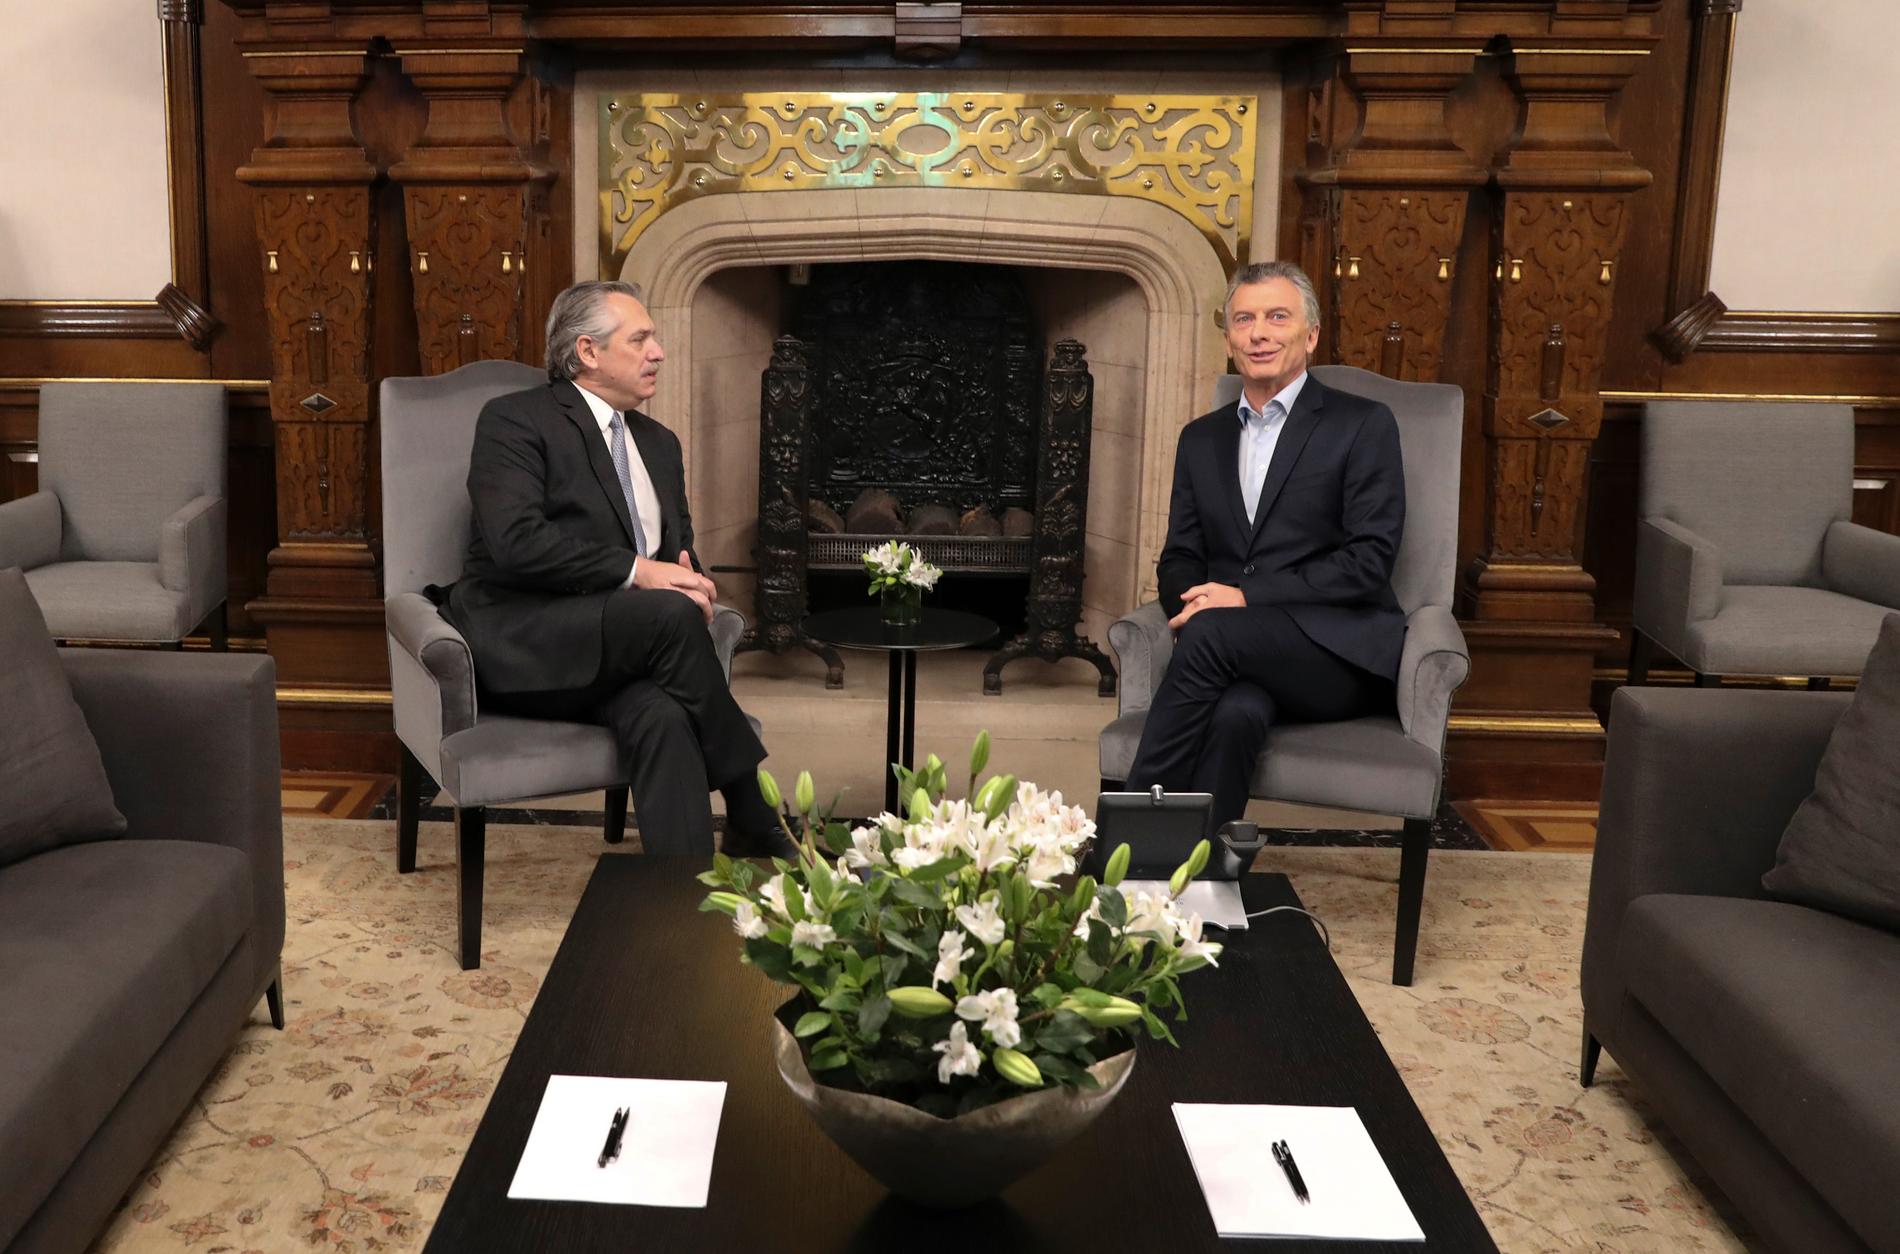 Alberto Fernández och Mauricio Macri poserar i samband med måndagens möte.